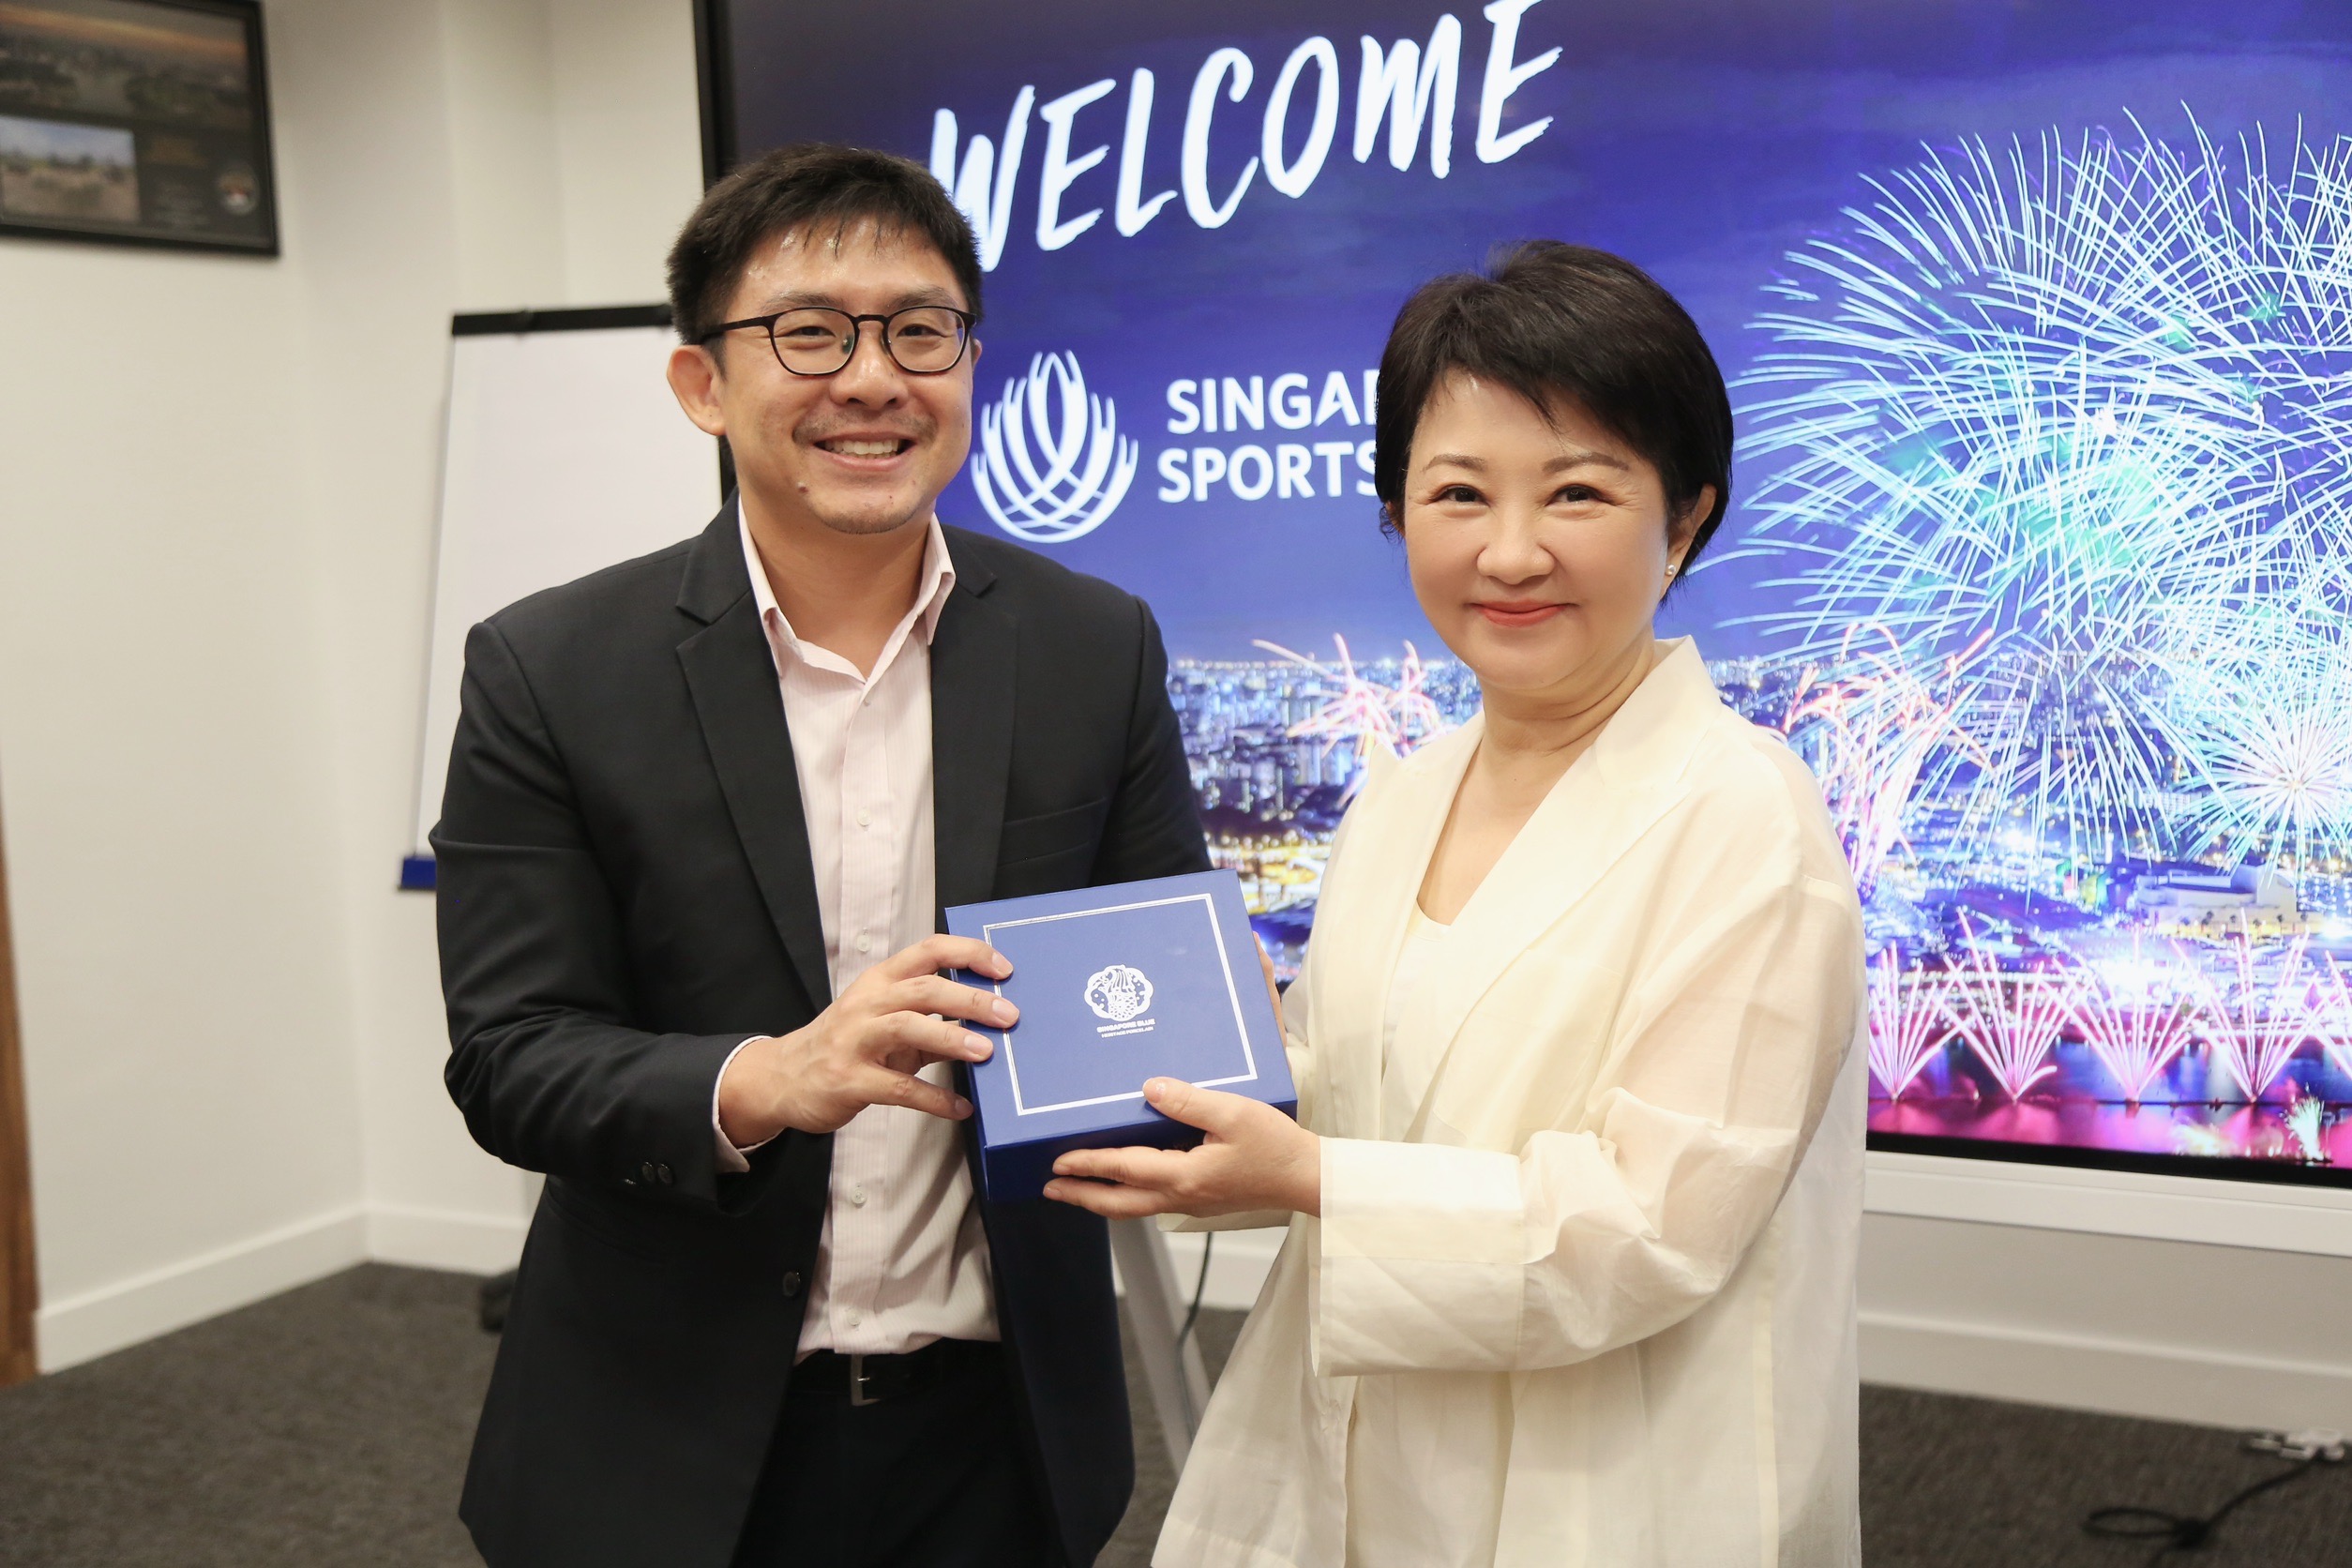 市長拜會新加坡體育局取經 盼創台中巨蛋「演唱會經濟」